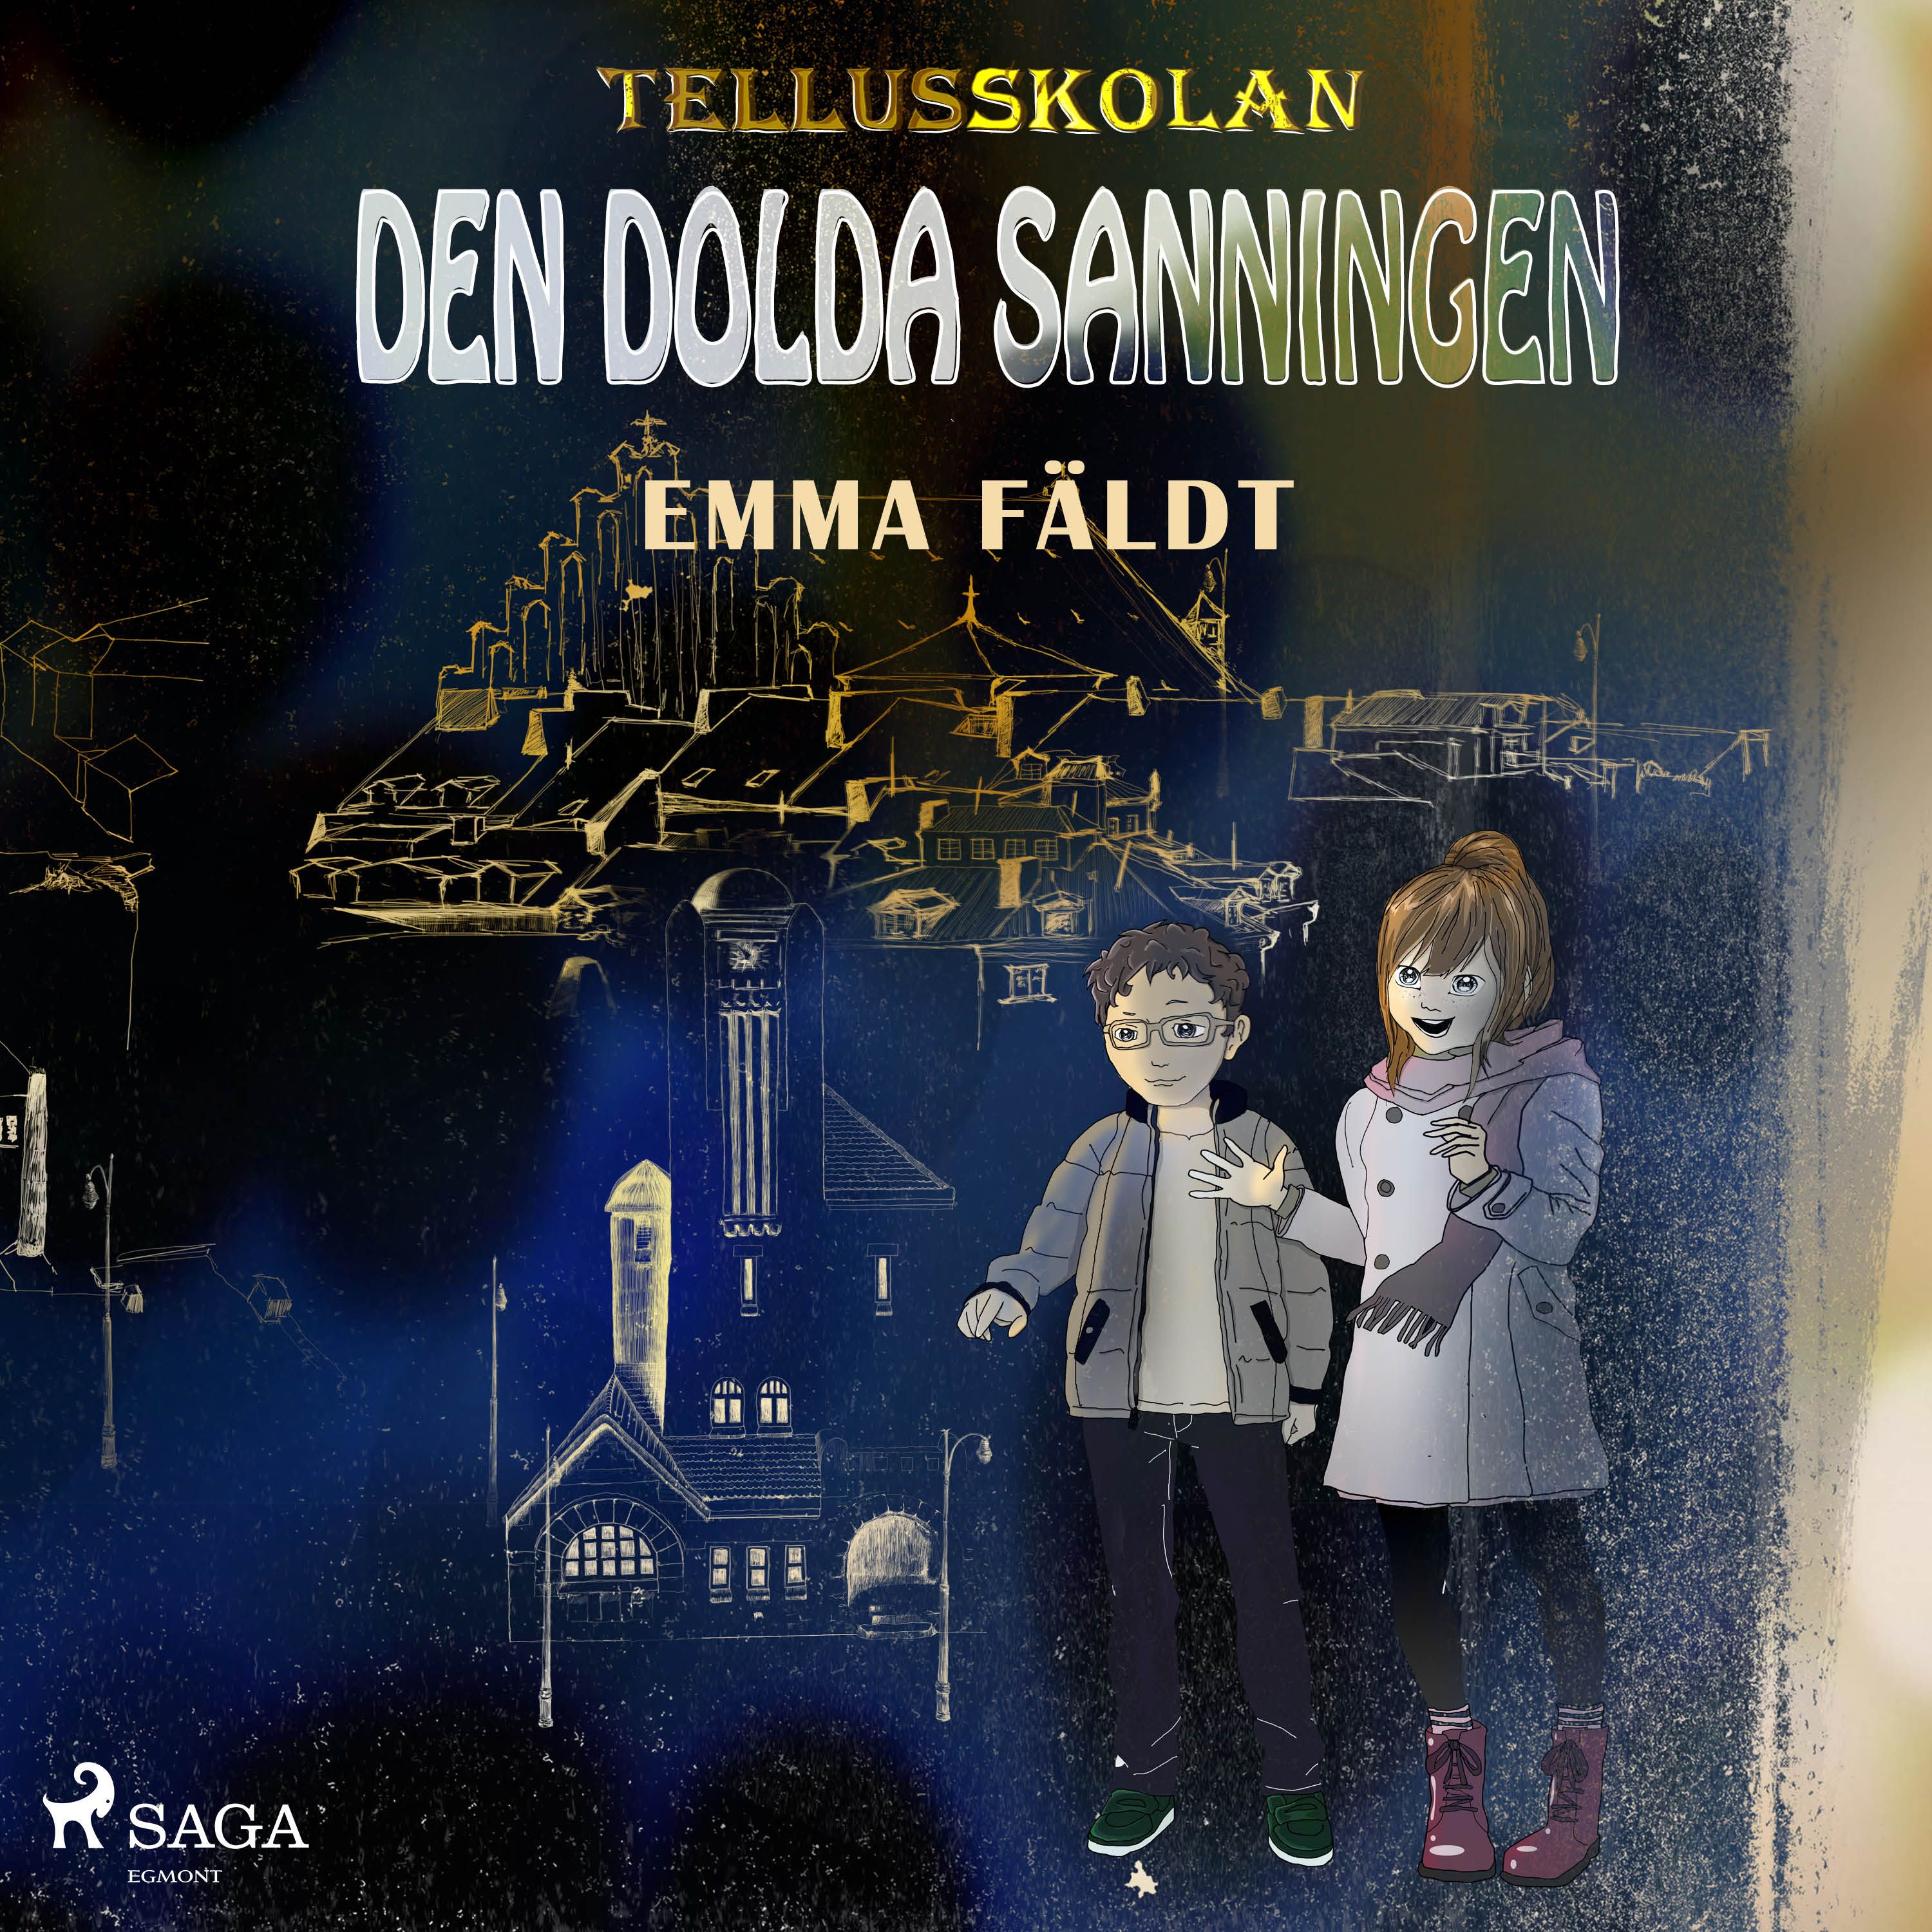 Tellusskolan: den dolda sanningen, ljudbok av Emma Fäldt